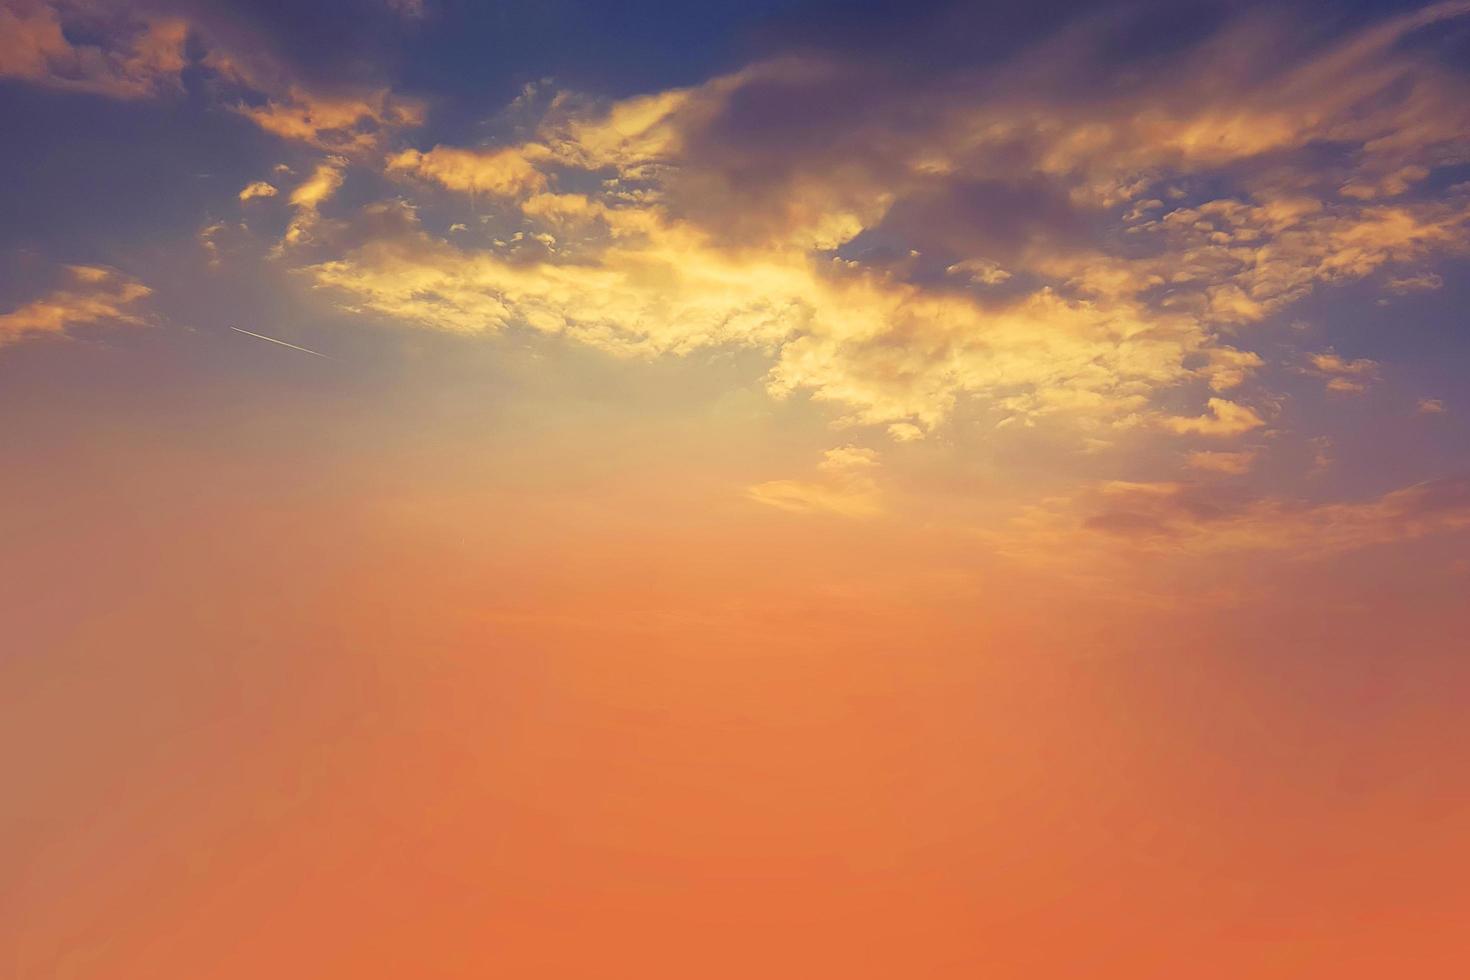 zonsondergang en oranje wolk en blauwe dageraad hemel met wolk horizontale lijnen bewegingseffect op de achtergrond van de zon. foto